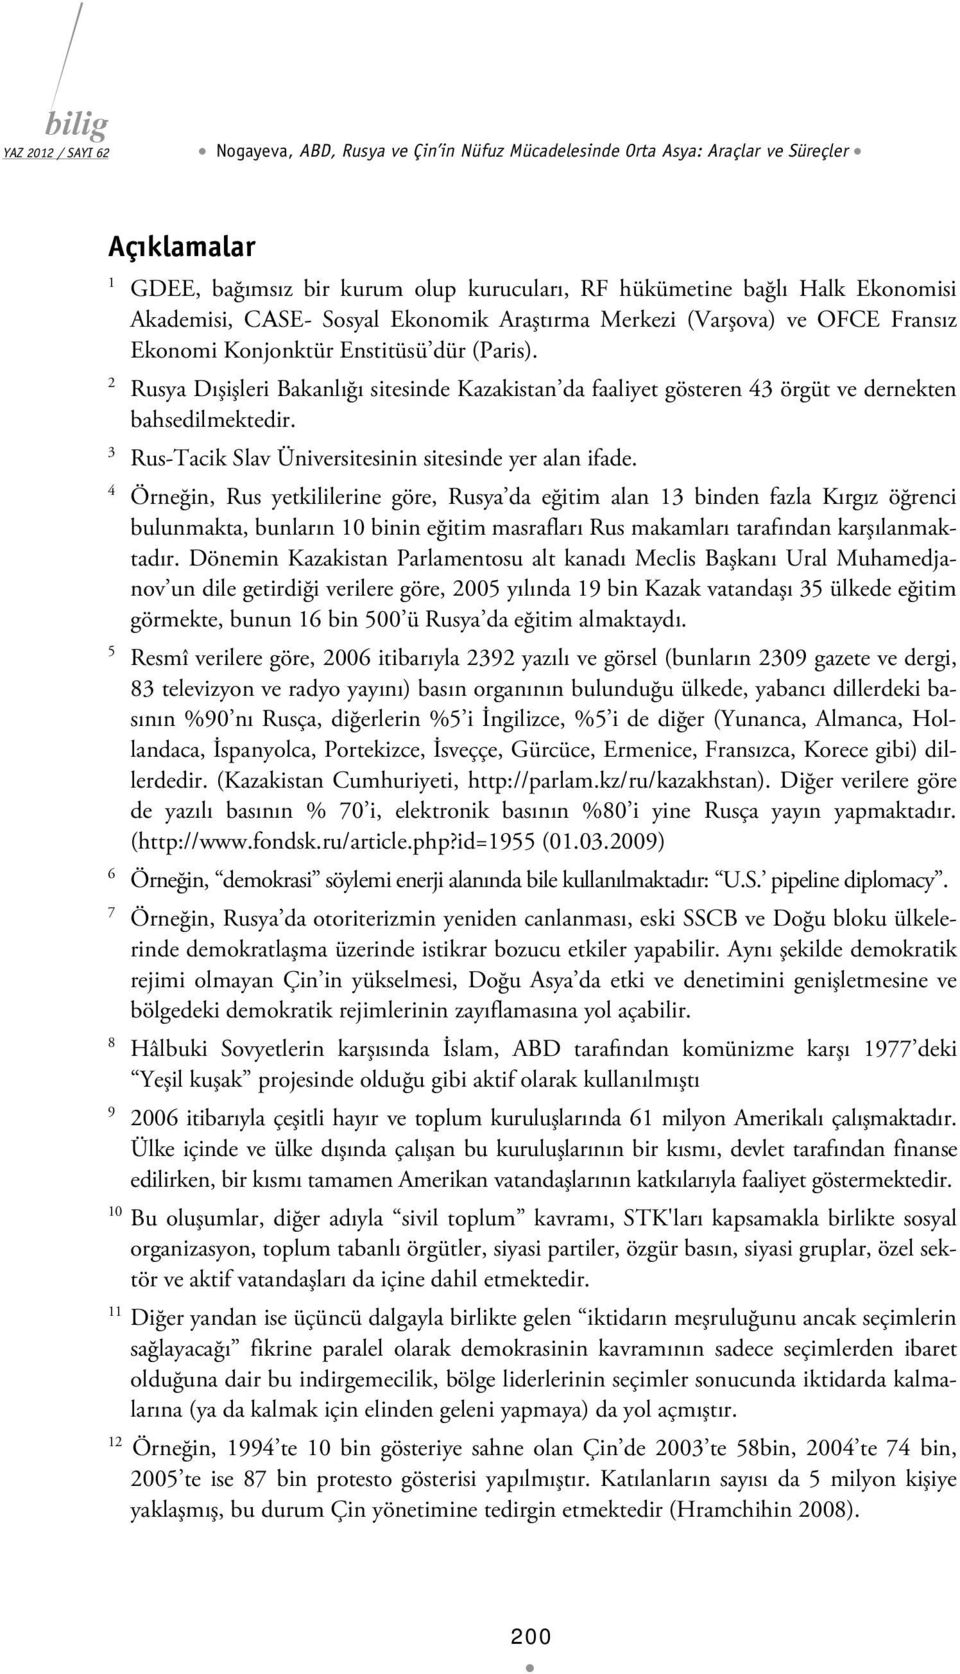 2 Rusya Dışişleri Bakanlığı sitesinde Kazakistan da faaliyet gösteren 43 örgüt ve dernekten bahsedilmektedir. 3 Rus-Tacik Slav Üniversitesinin sitesinde yer alan ifade.